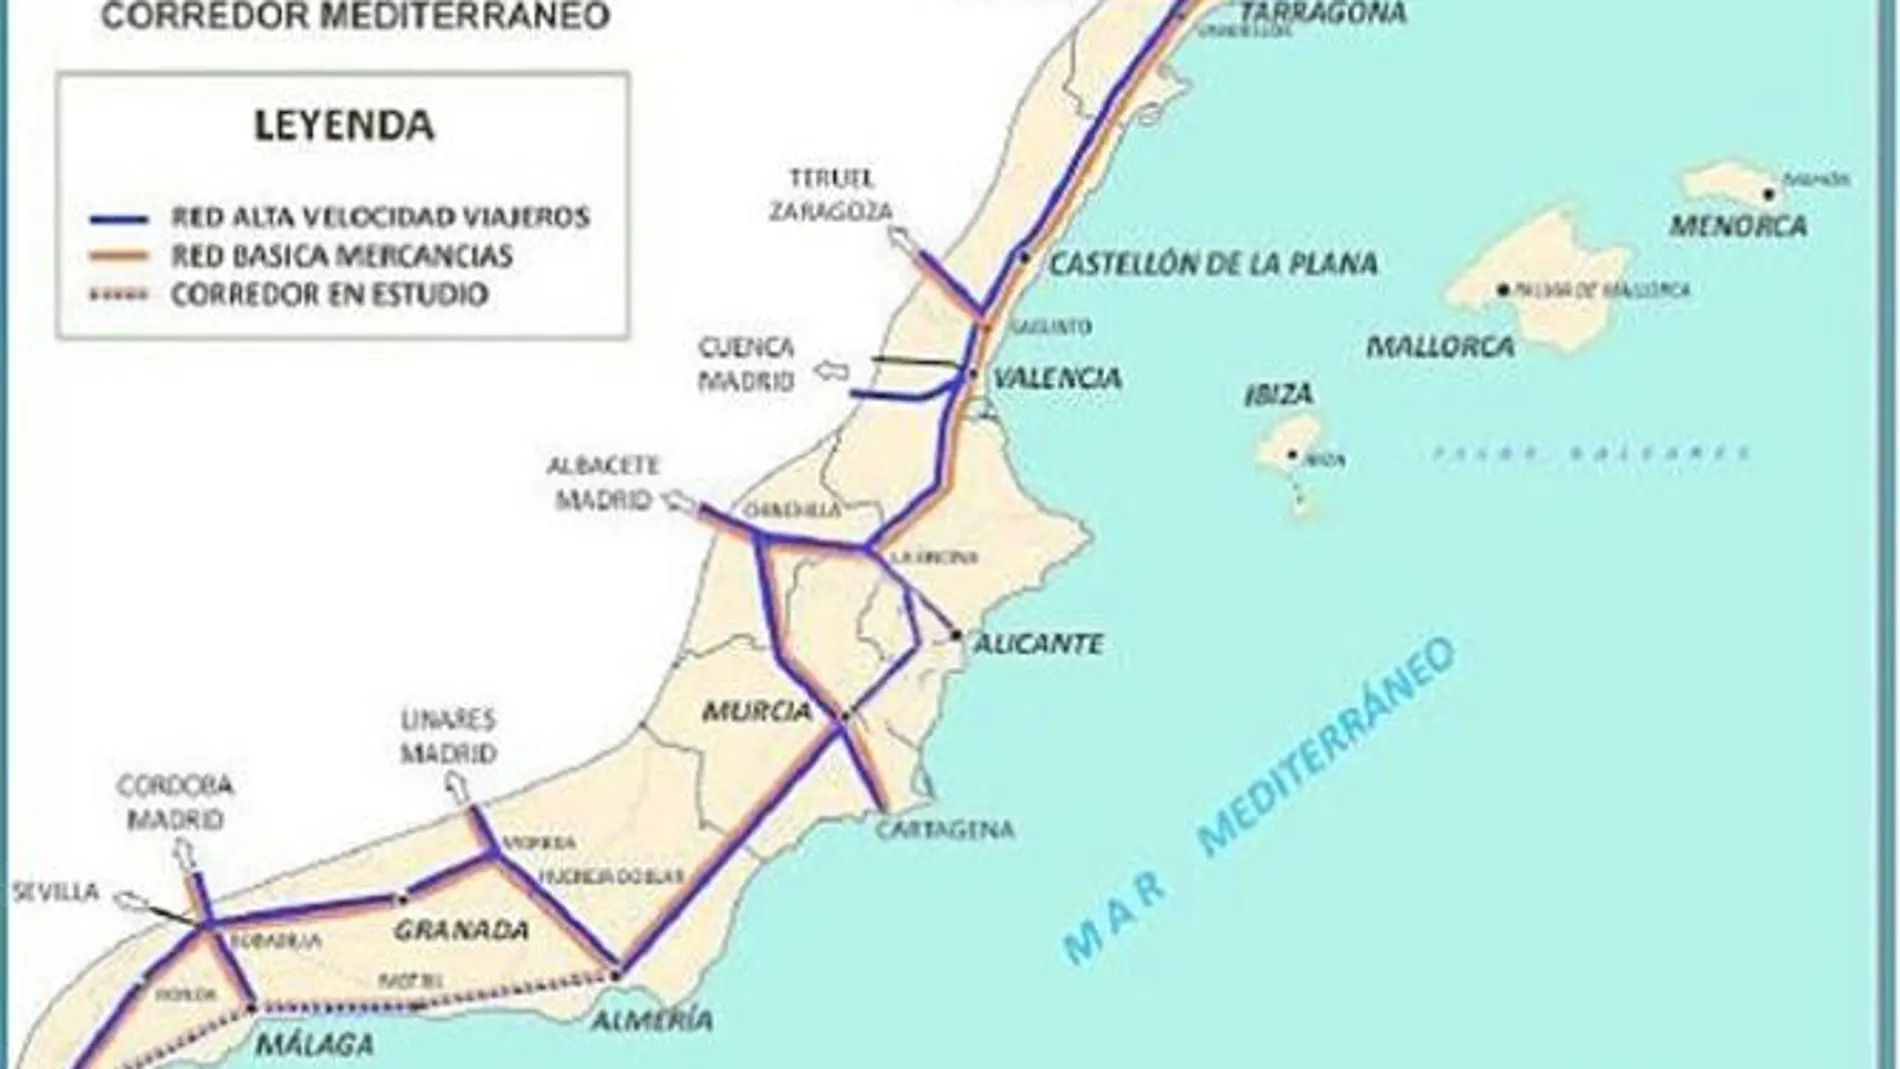 Ferrmed defiende que el Corredor transcurra desde Gerona hasta Algeciras, como indica el mapa